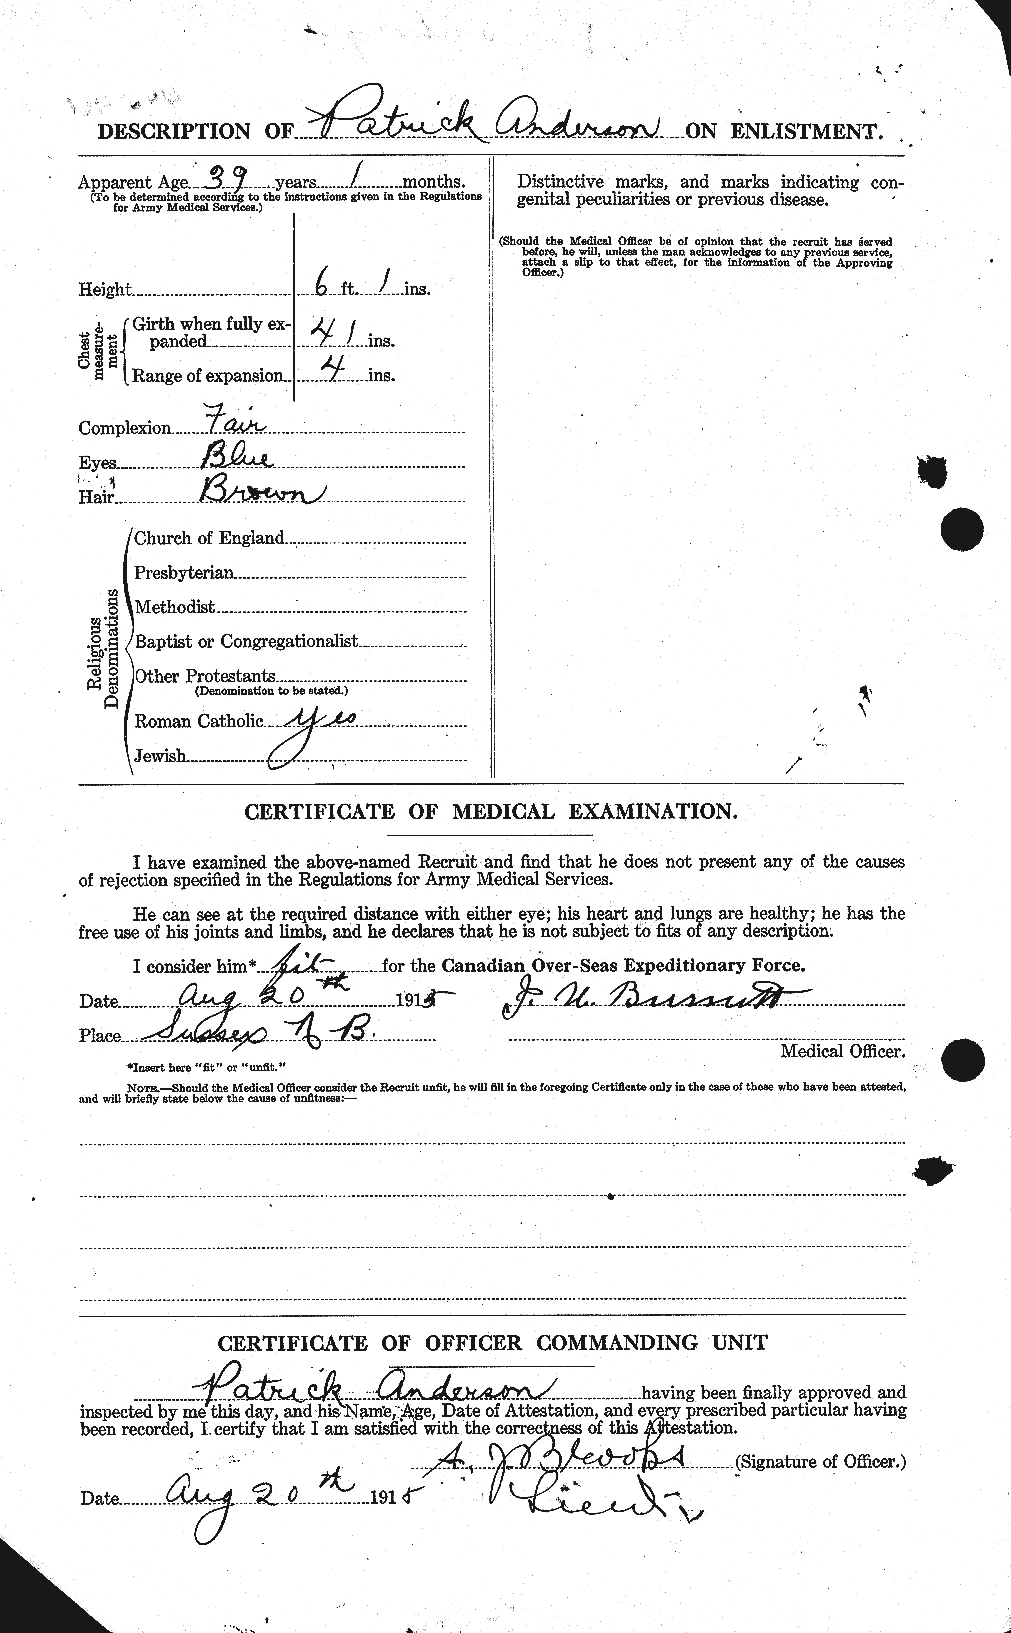 Dossiers du Personnel de la Première Guerre mondiale - CEC 207372b